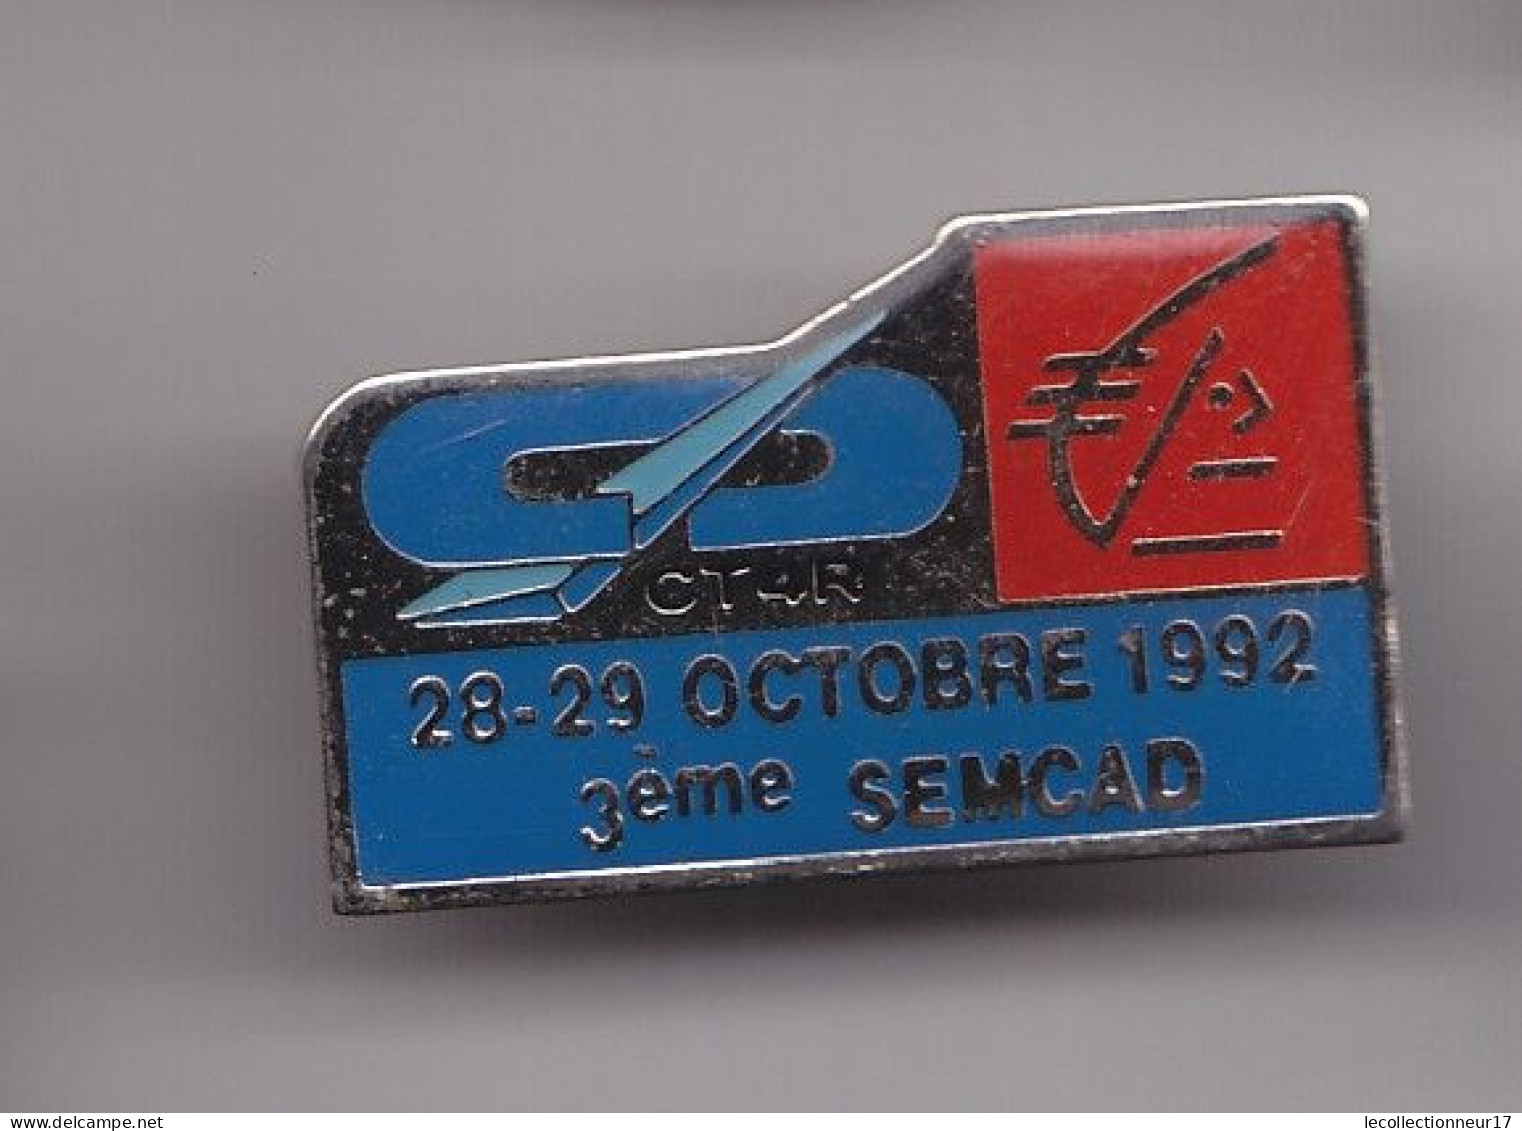 Pin's  Caisse D' Epargne Ecureuil CT4R 28-29 Octobre 1992 3ème Semcad Réf 7498JL - Banques